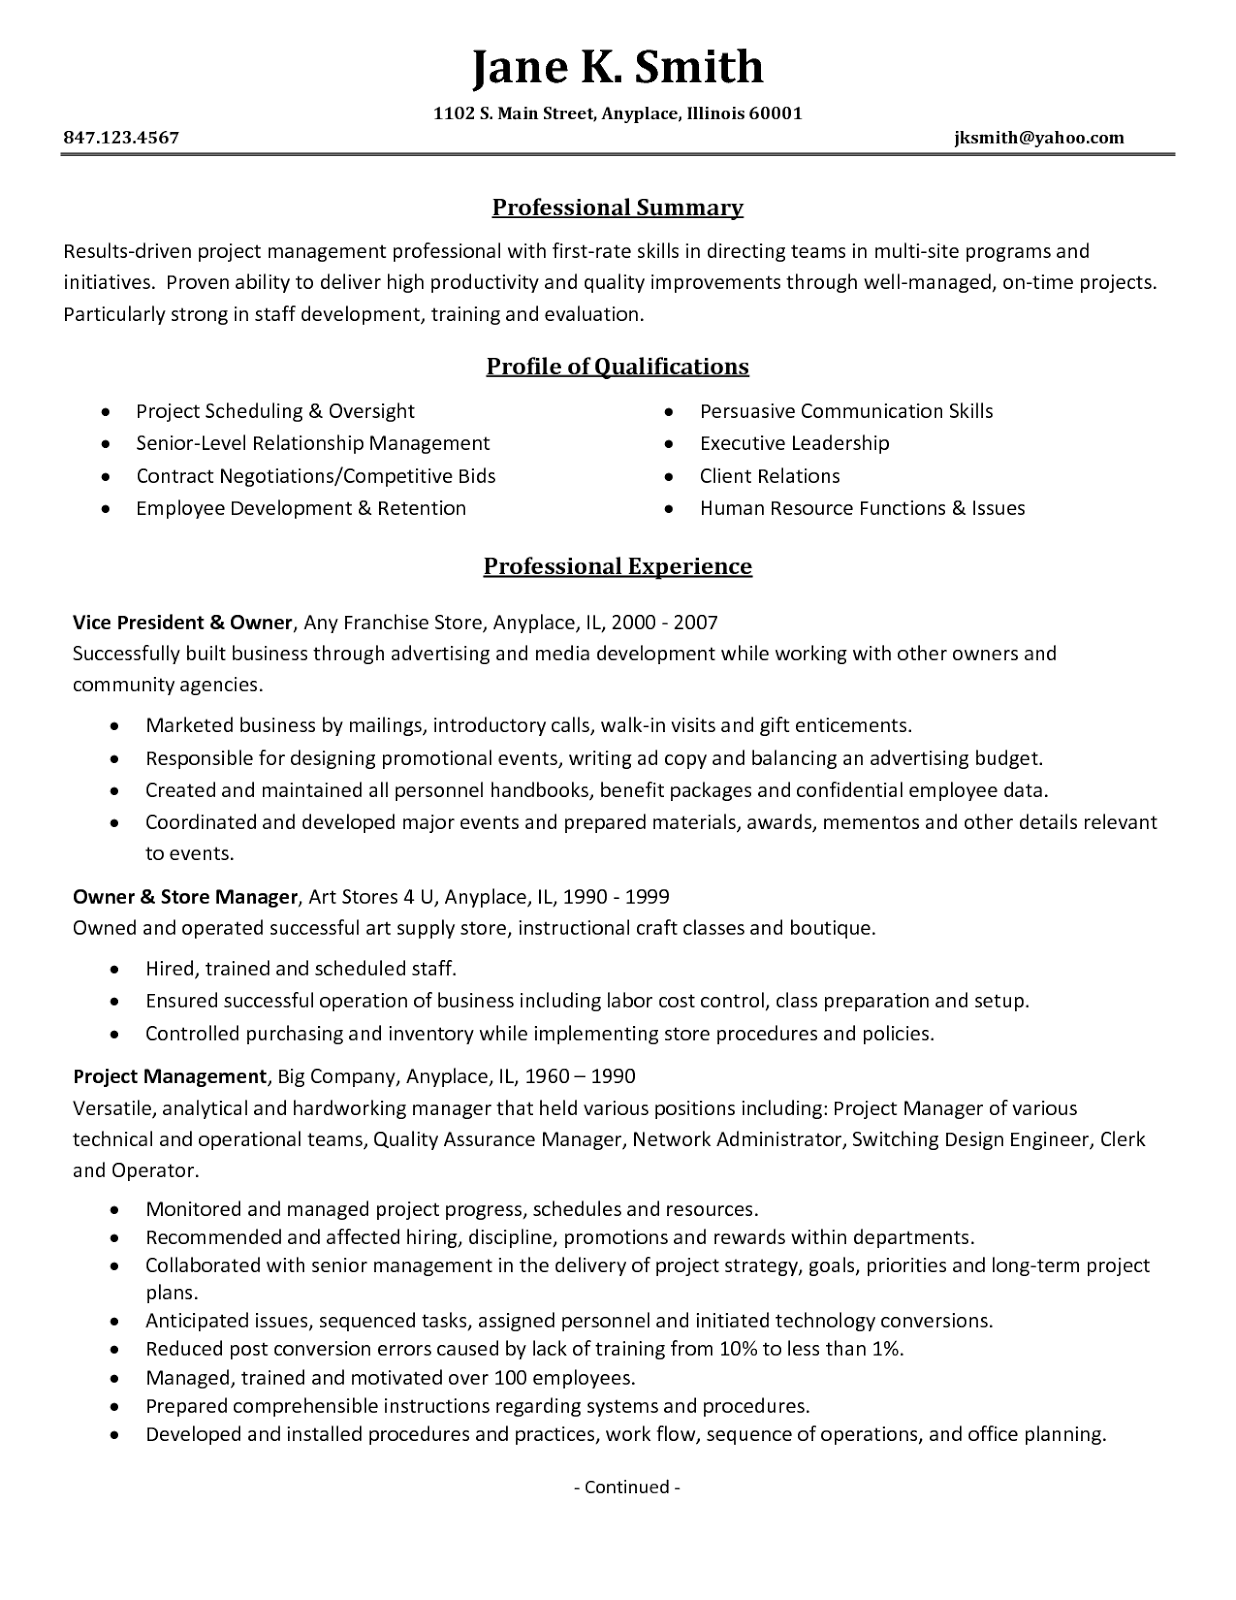 Resume templates apartment management